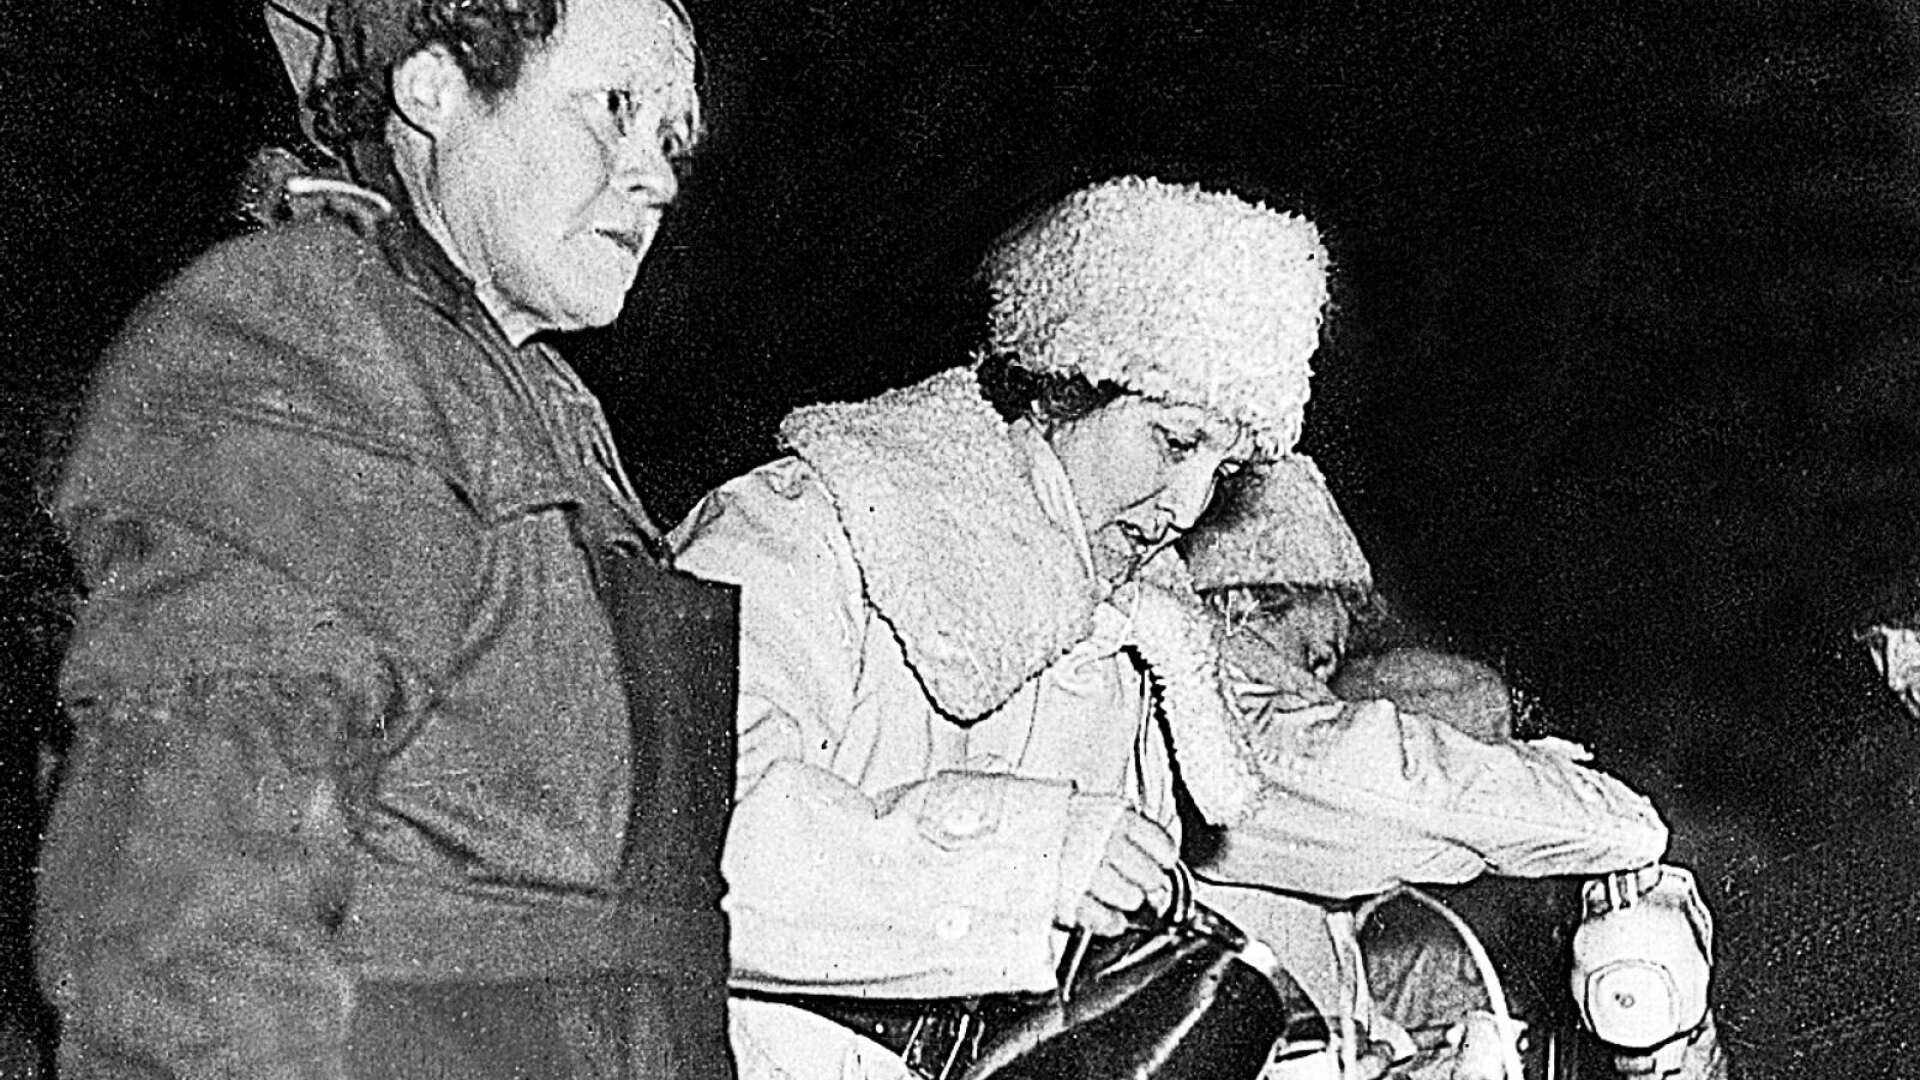 På ett par platser serverades glögg och varm korv, vilket var uppskattat i kylan. Lottakåren stod för serveringen och på bilden ses Lillian Karlgren, Sonja Eriksson och Elsa Olsson Gyberg. En av dem tyvärr delvis skymd.